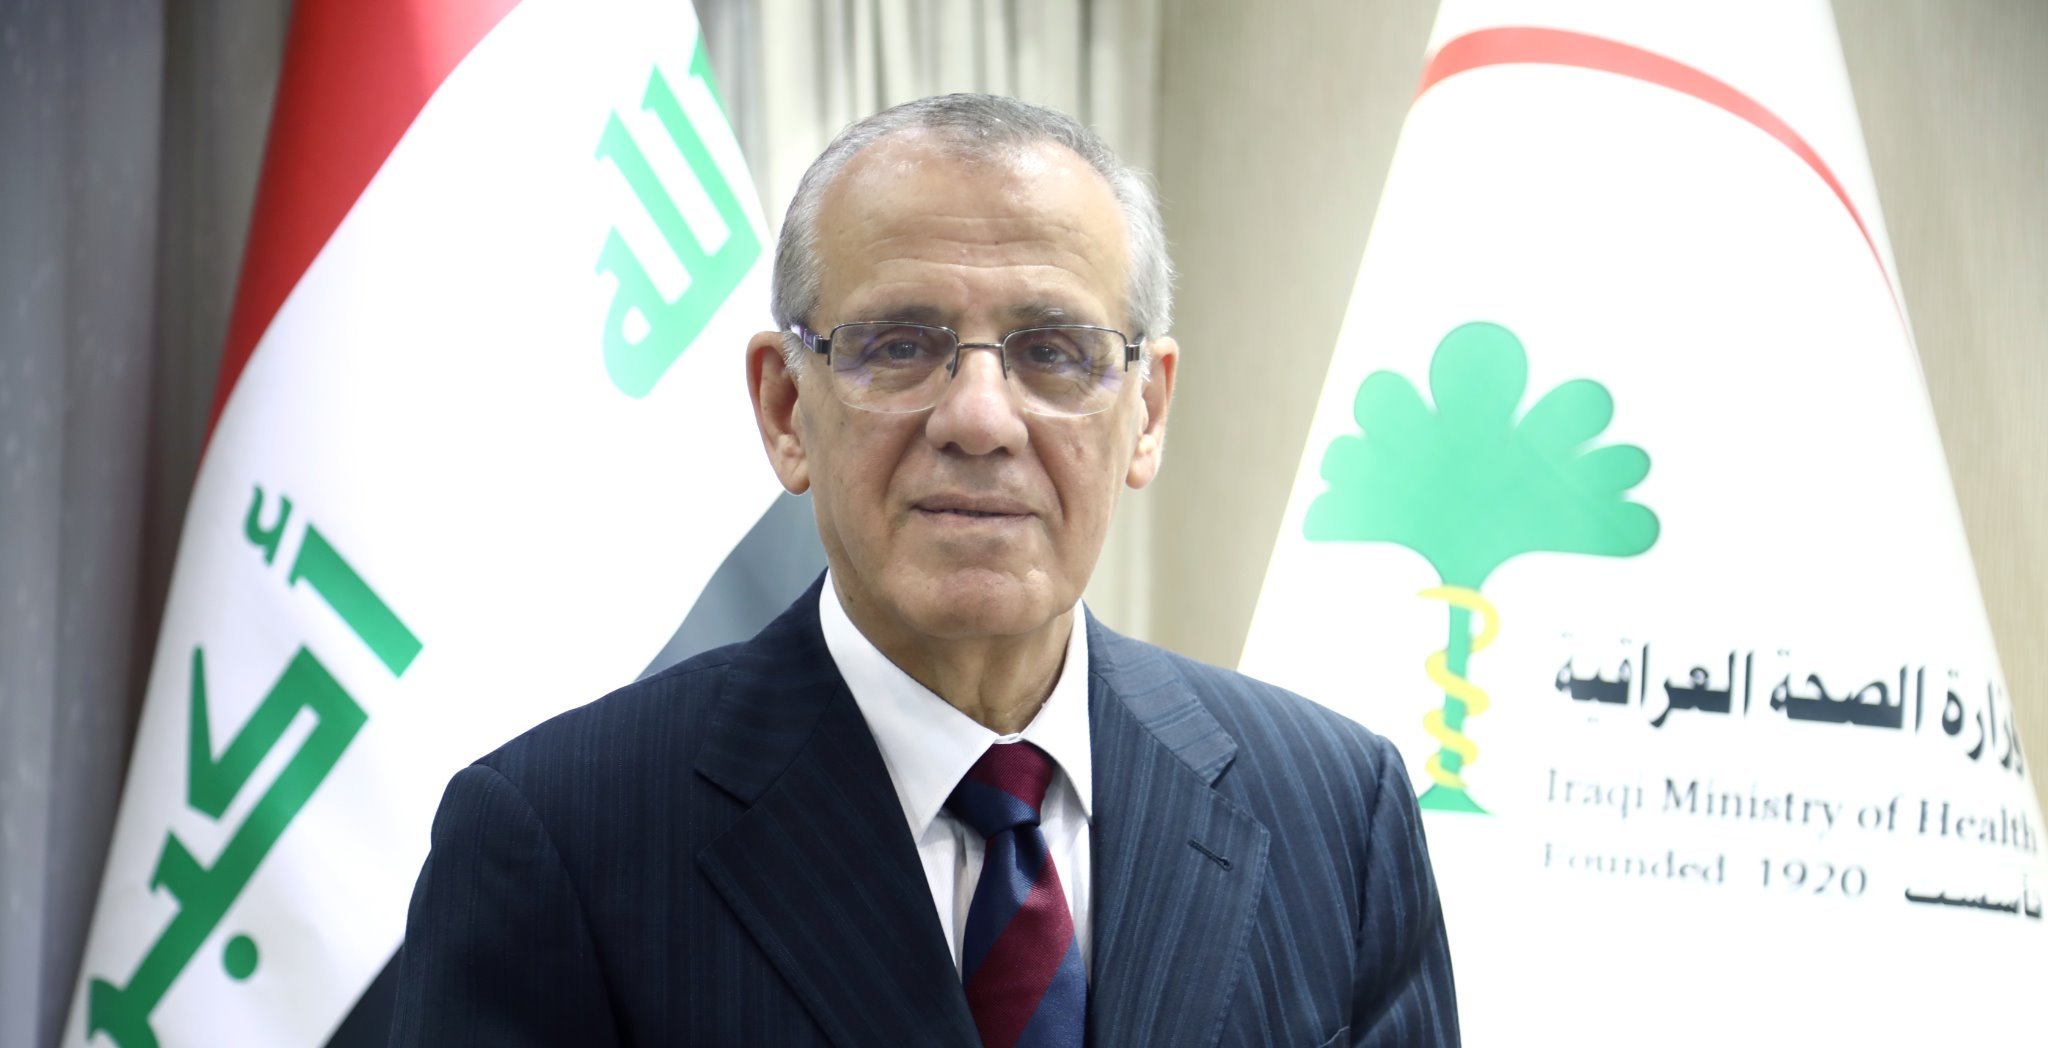 بالوثائق : وزير الصحة يقدم استقالته الى عبد المهدي